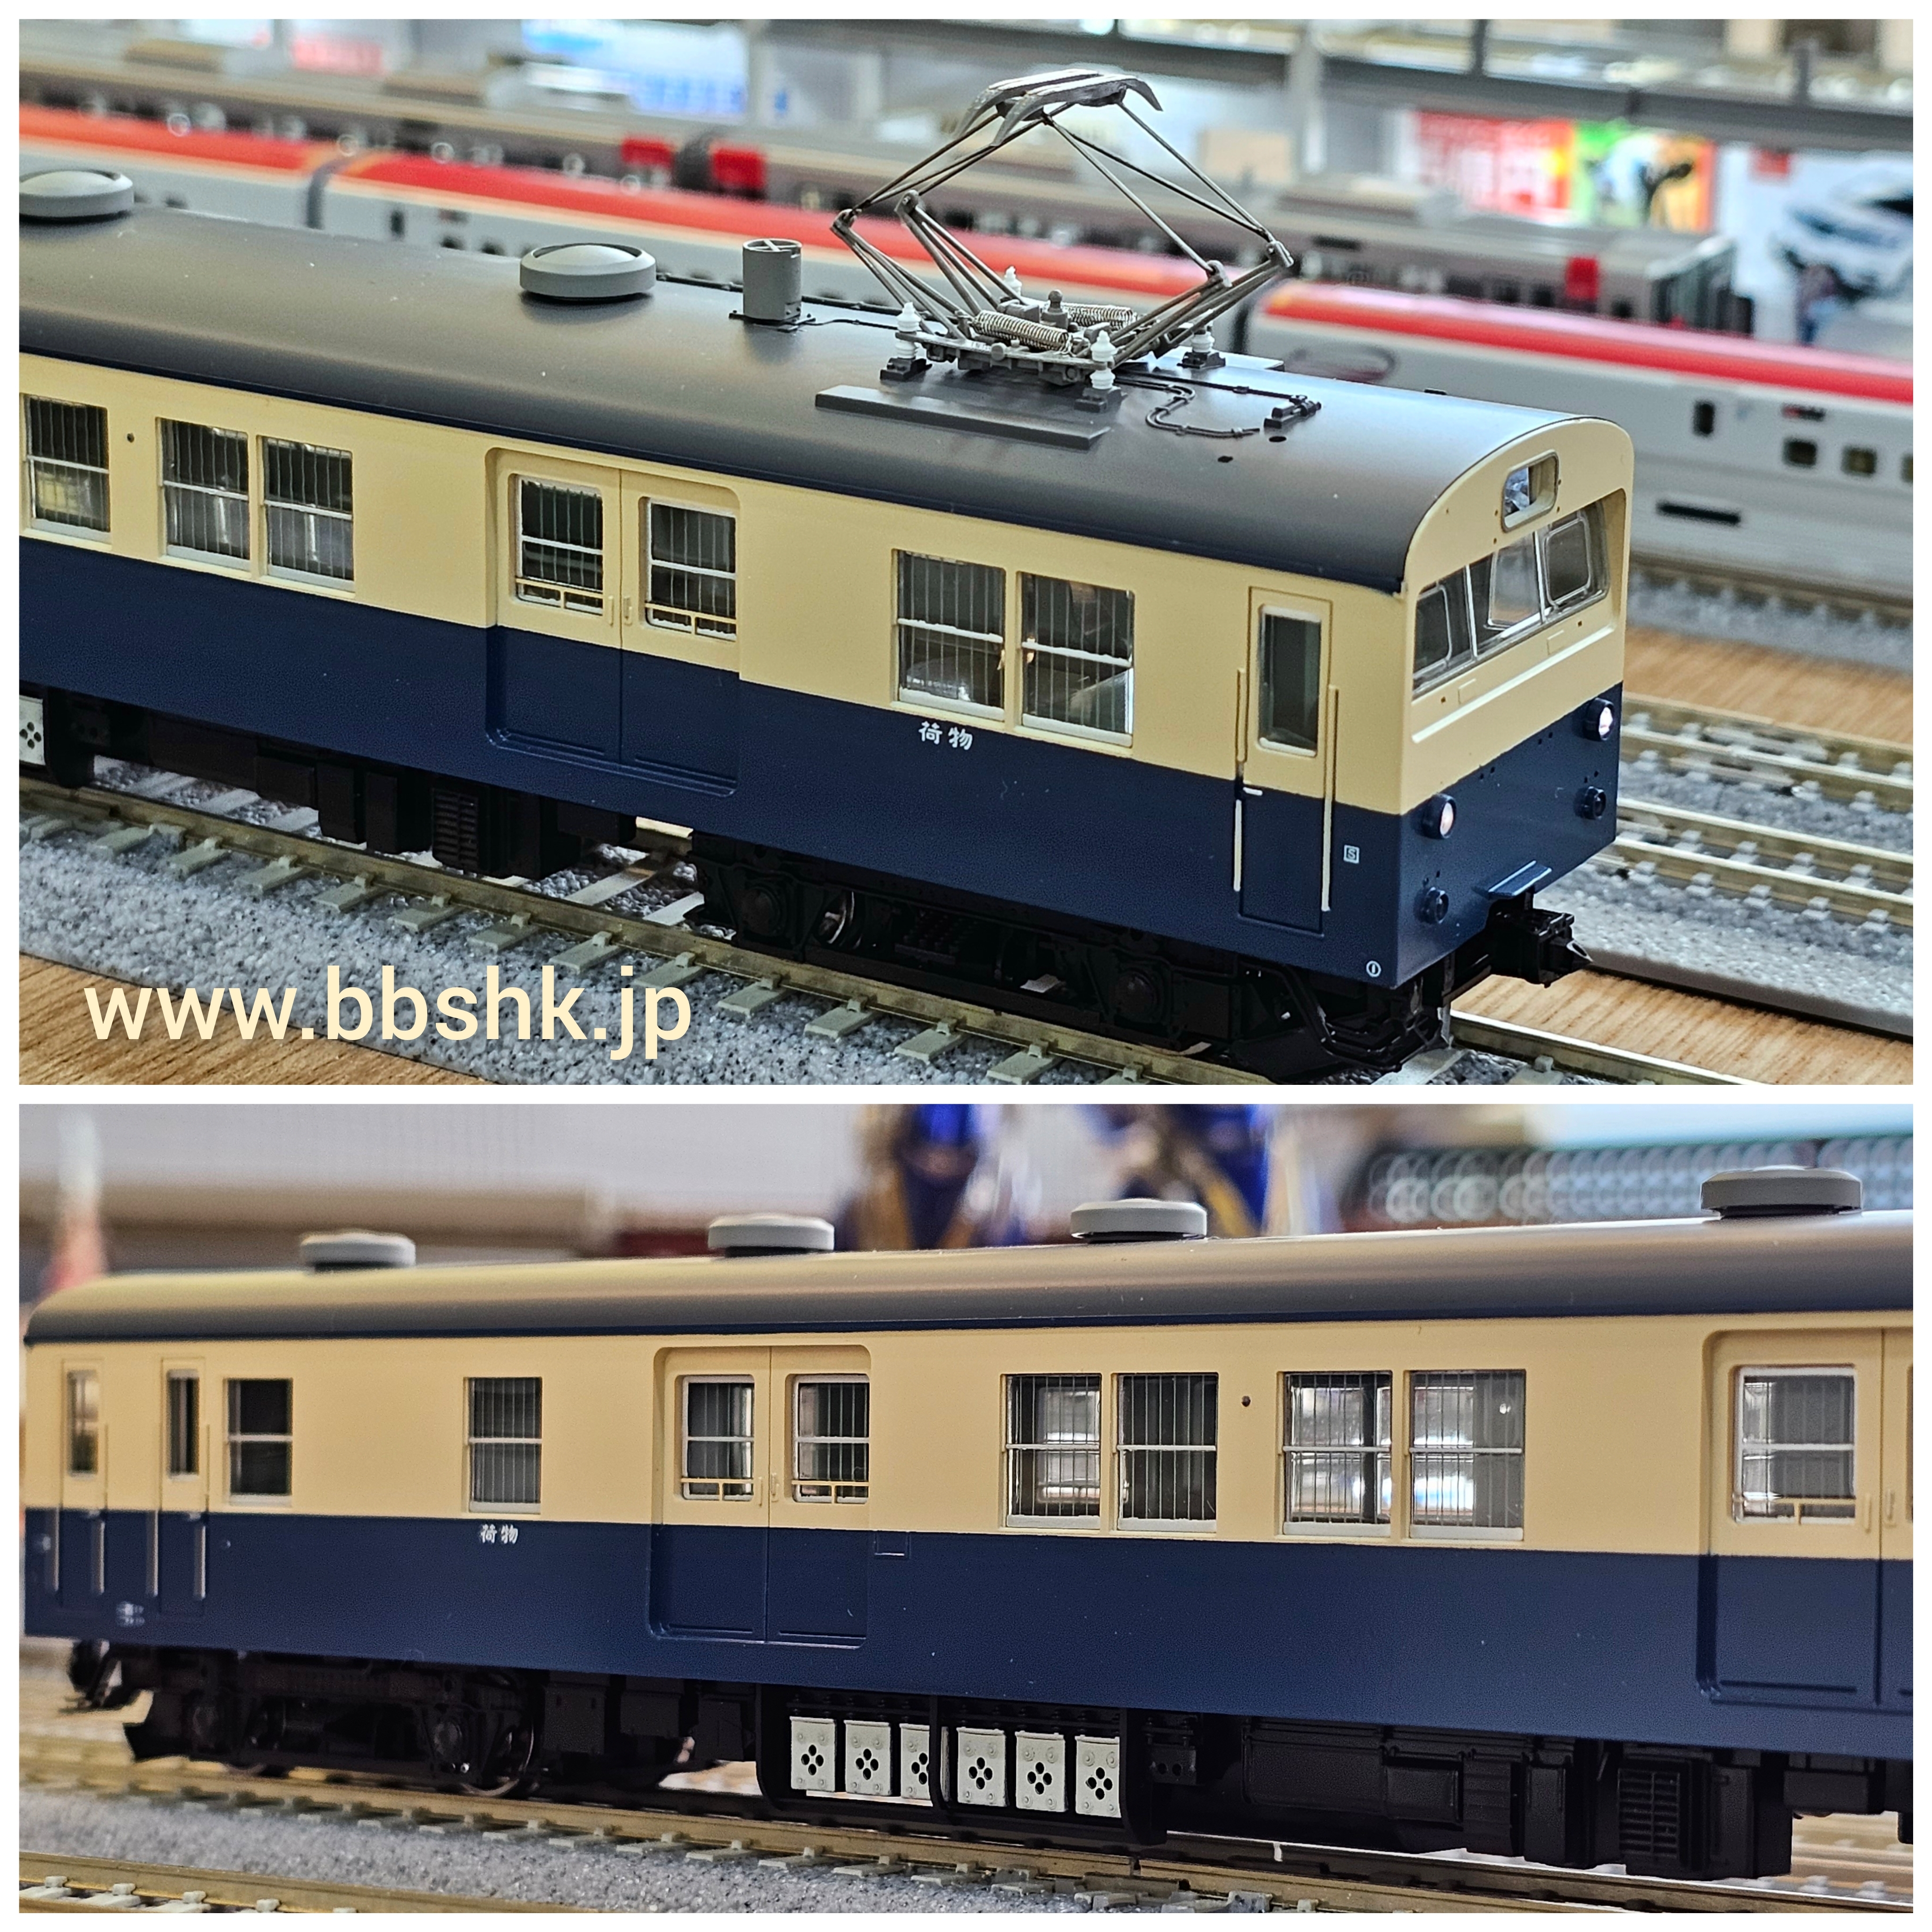 TOMIX HO-6022 16番(HO) 国鉄電車 クモニ83-0形 (横須賀色) (M)